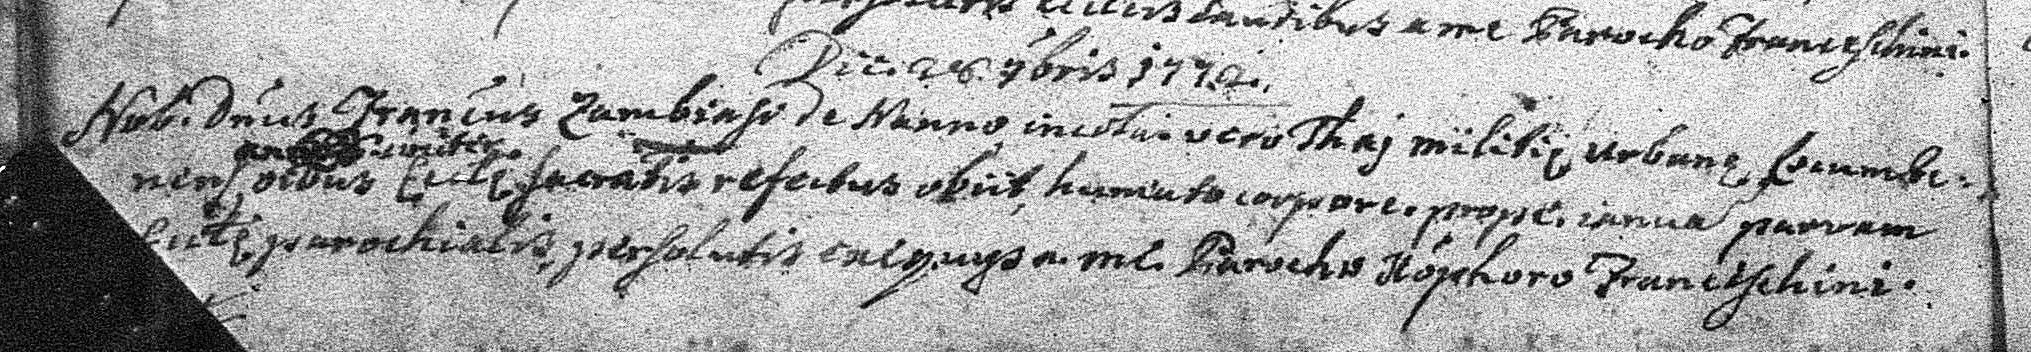 1772 death record of the noble Francesco Zambiasi of Nanno, living in Taio